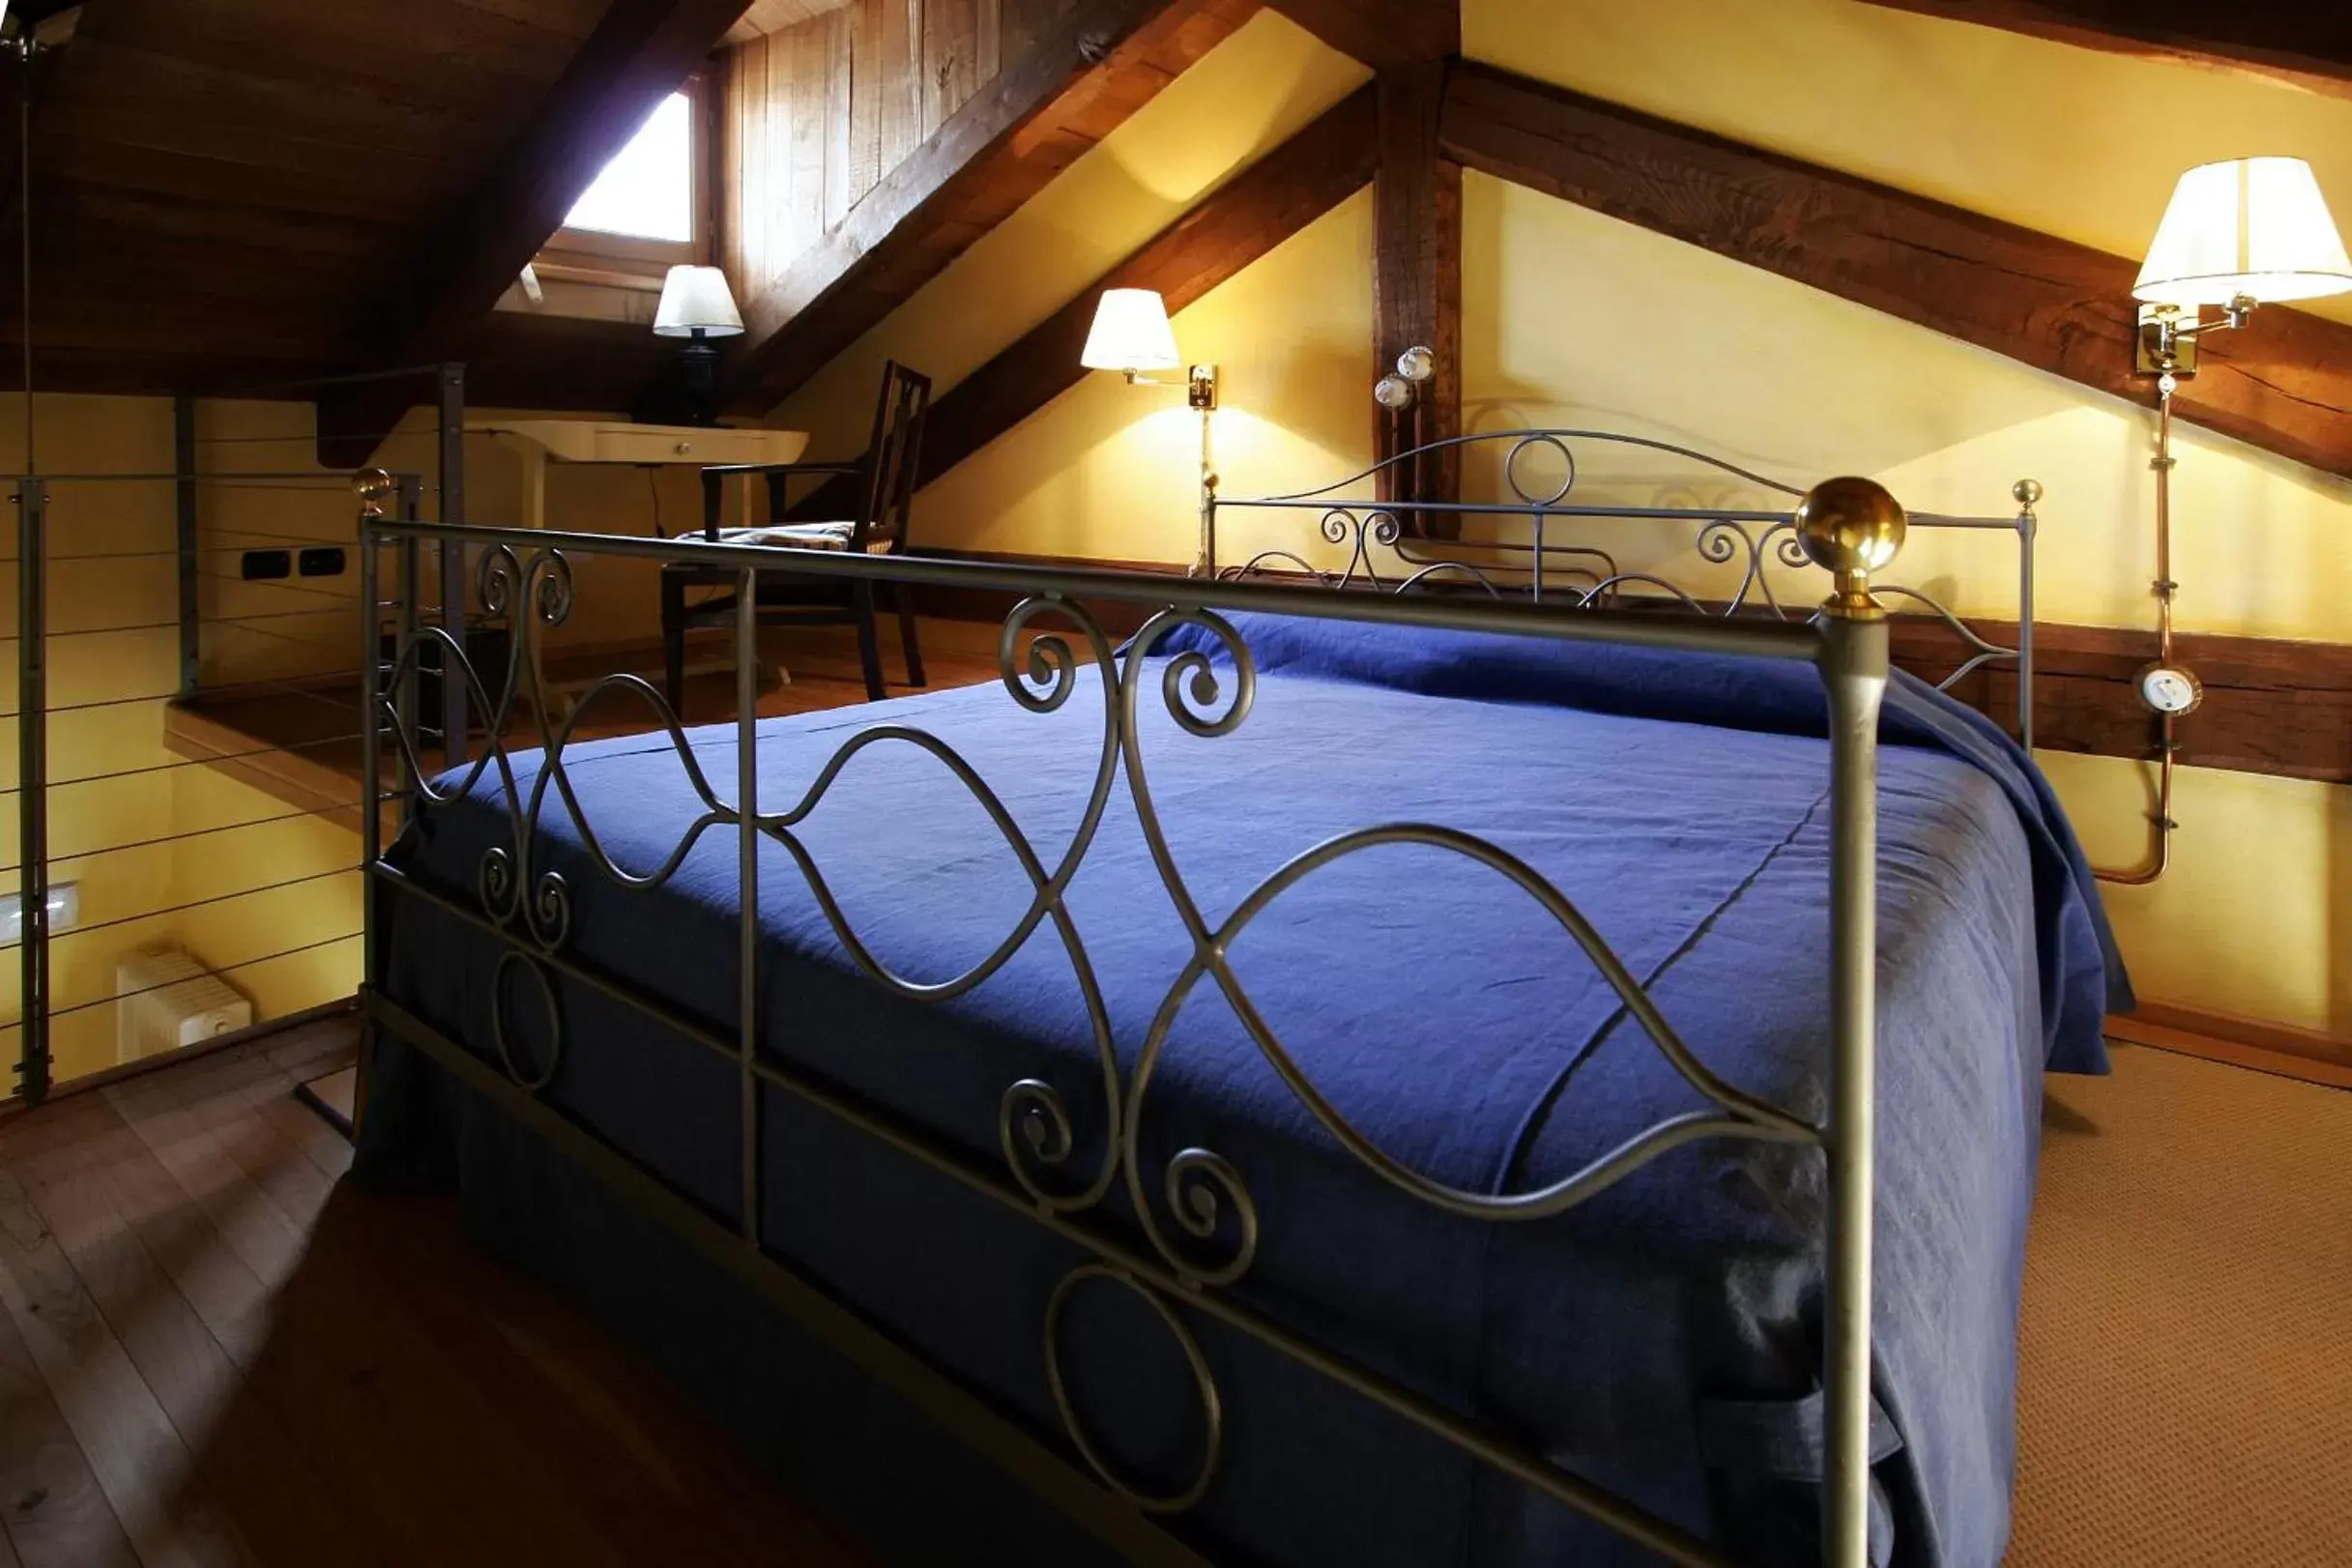 Photo of the whole room, Bed in Foresteria Ristorante Conti Roero